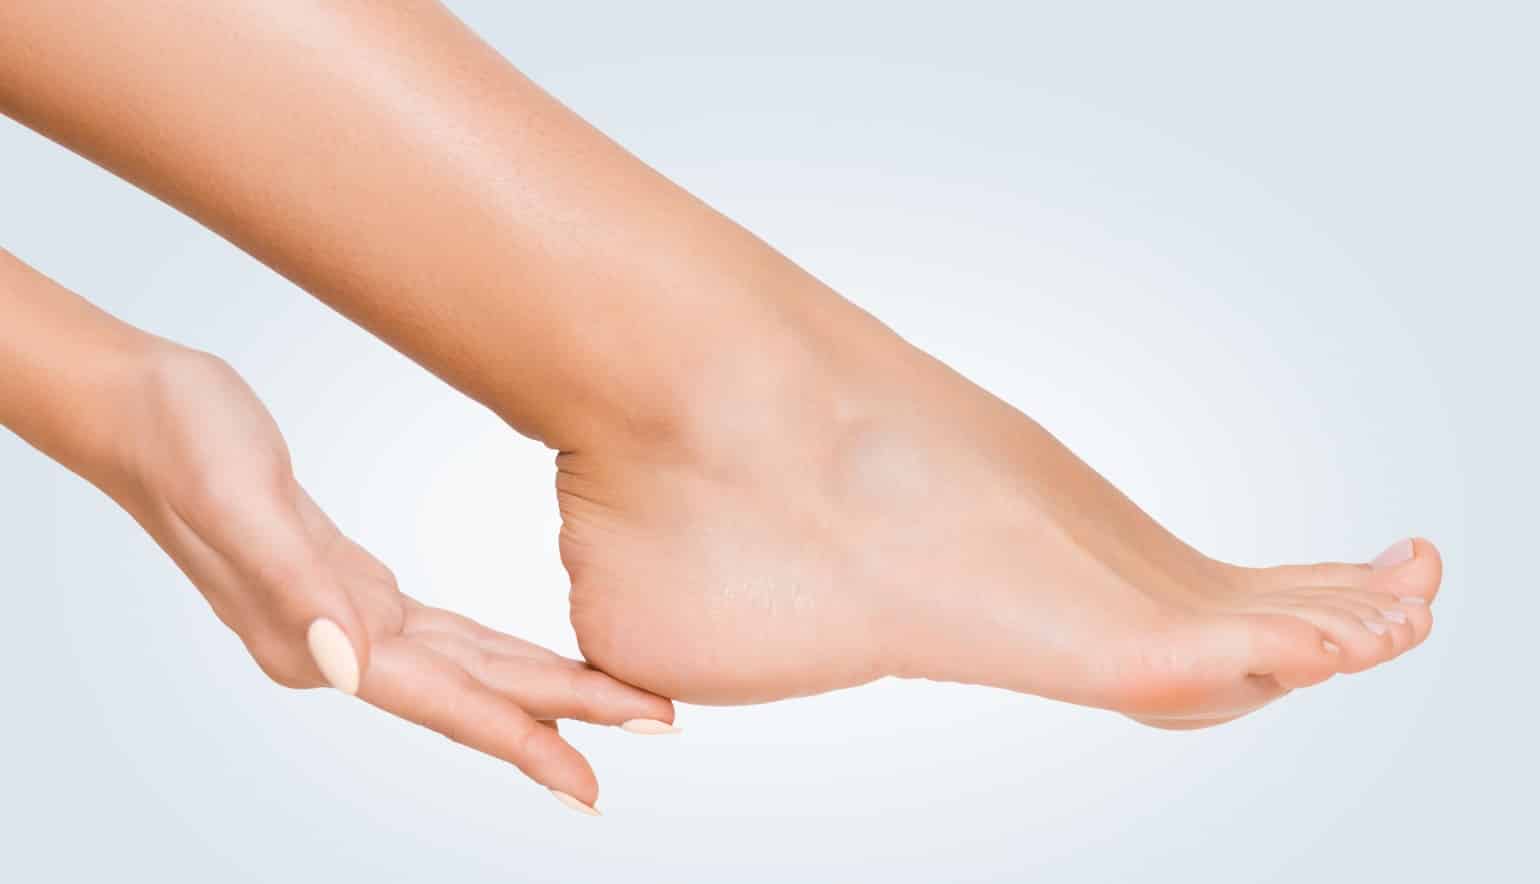 Traitement des pieds par injections de Botox | Paris | Dr Louafi